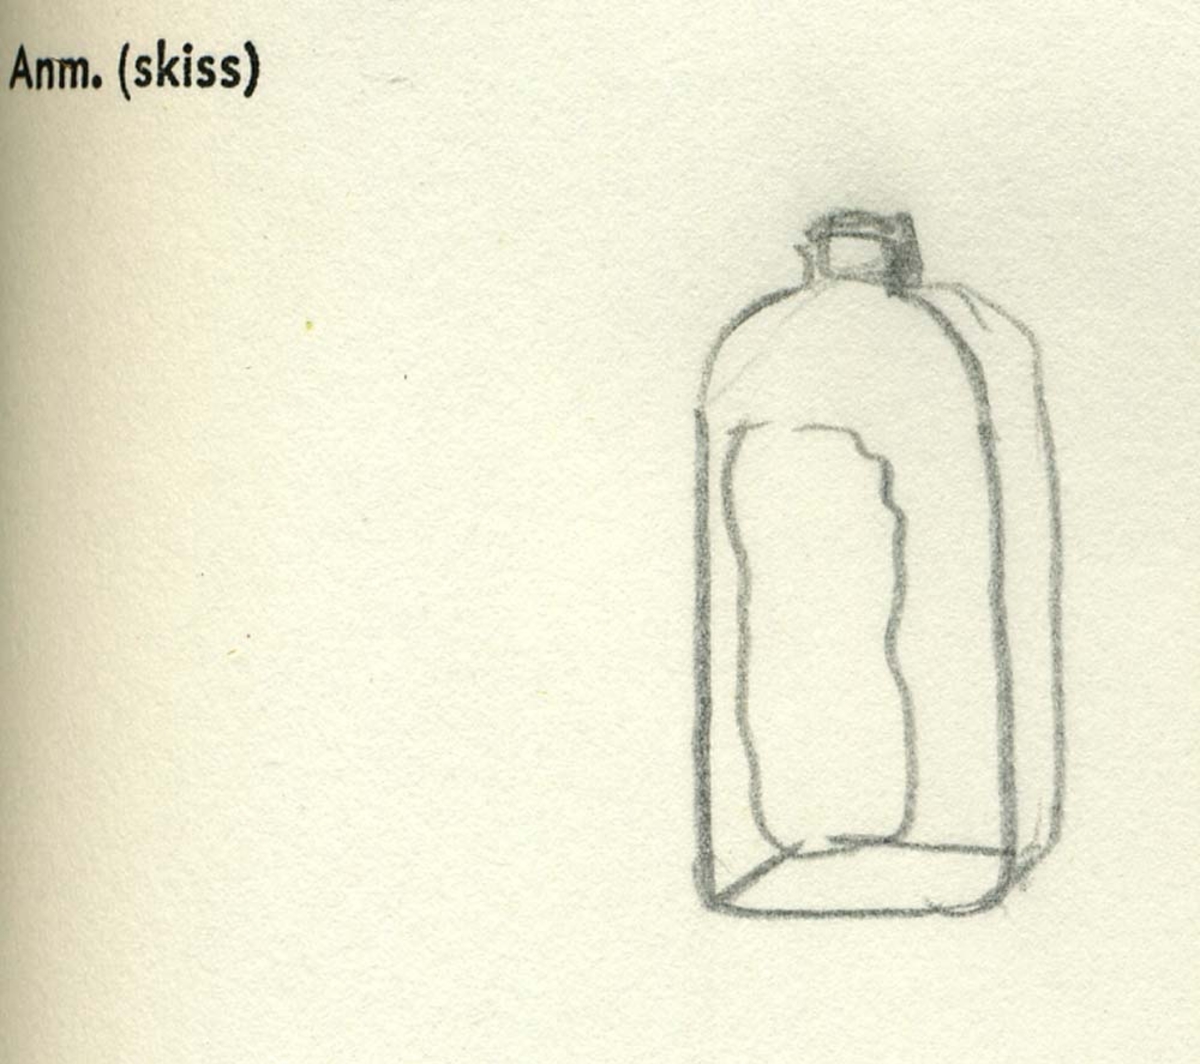 En glasflaska.
Flaskan är fyrsidig med stucken botten. Flaskhalsen är vriden och sitter fästad vid en fragmentarisk tennkork. Tennkorken är gängad på insidan. Runt korkens yttersida löper en ristad linje. På undersidan av bottnen finns ett puntelmärke. Glaset är grönfärgat och har en iriserande beläggning. Ena sidan samt en del av bottnen saknas.

Case bottle, potash-lime glass. Bottle has a threded tin lid and a pontil mark on the base.